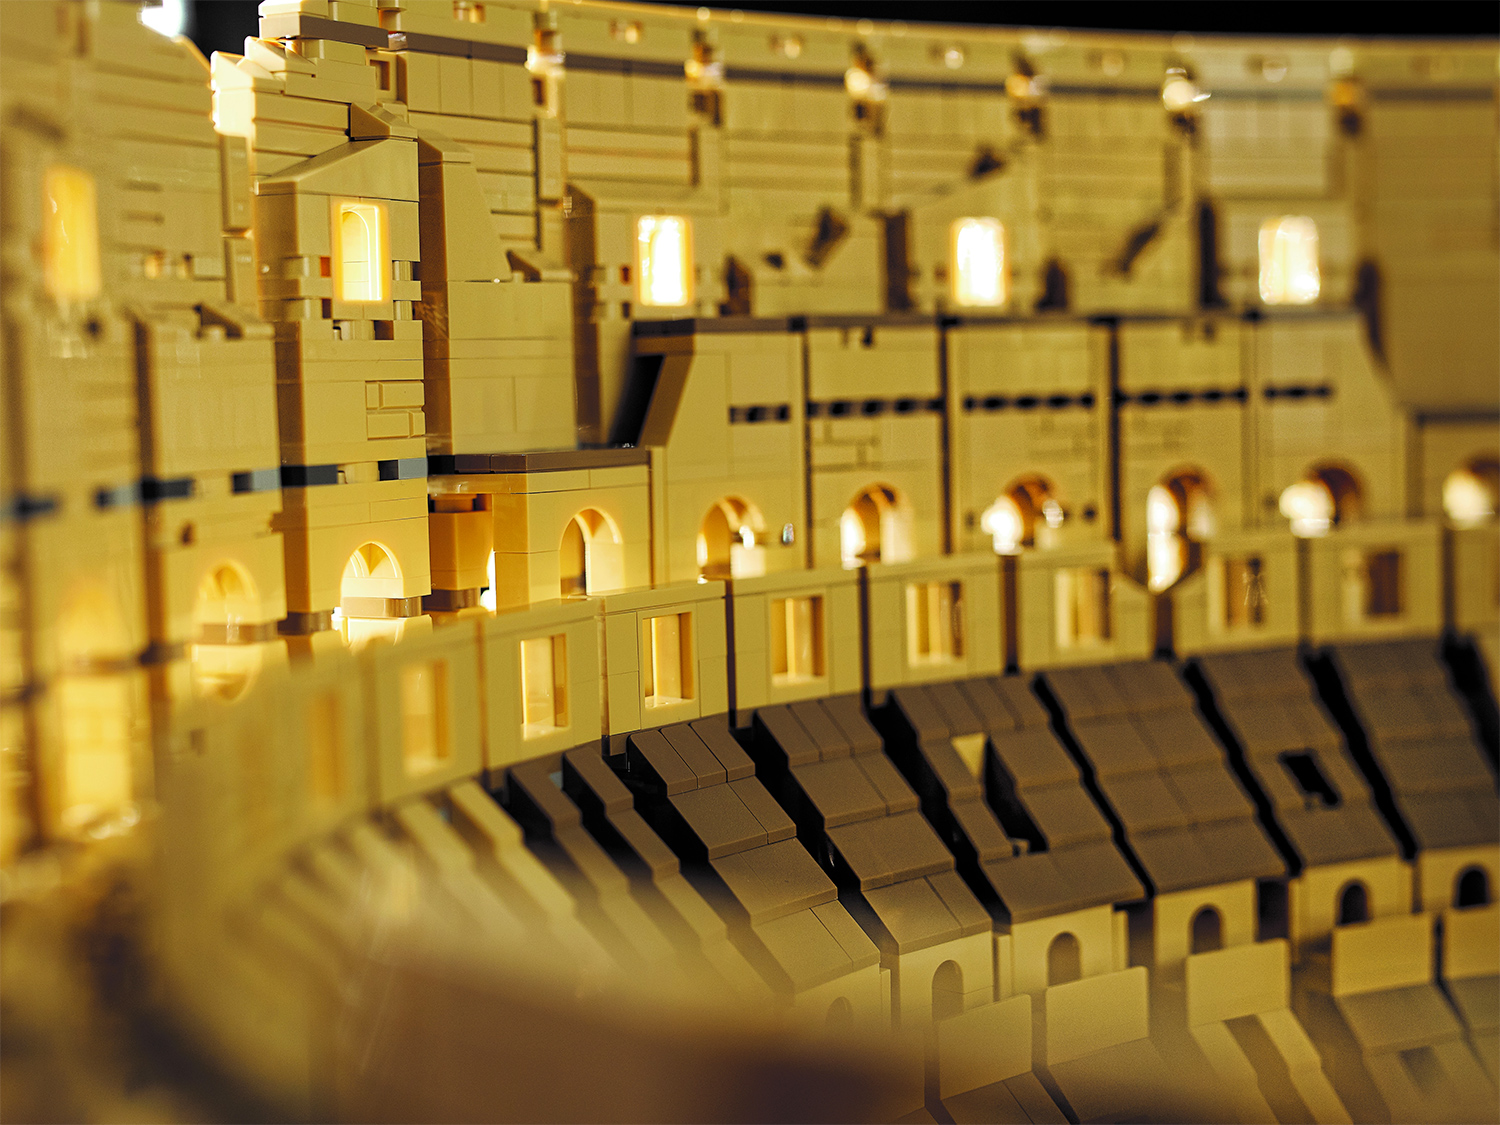 Colosseum of Rome LEGO Creator Expert